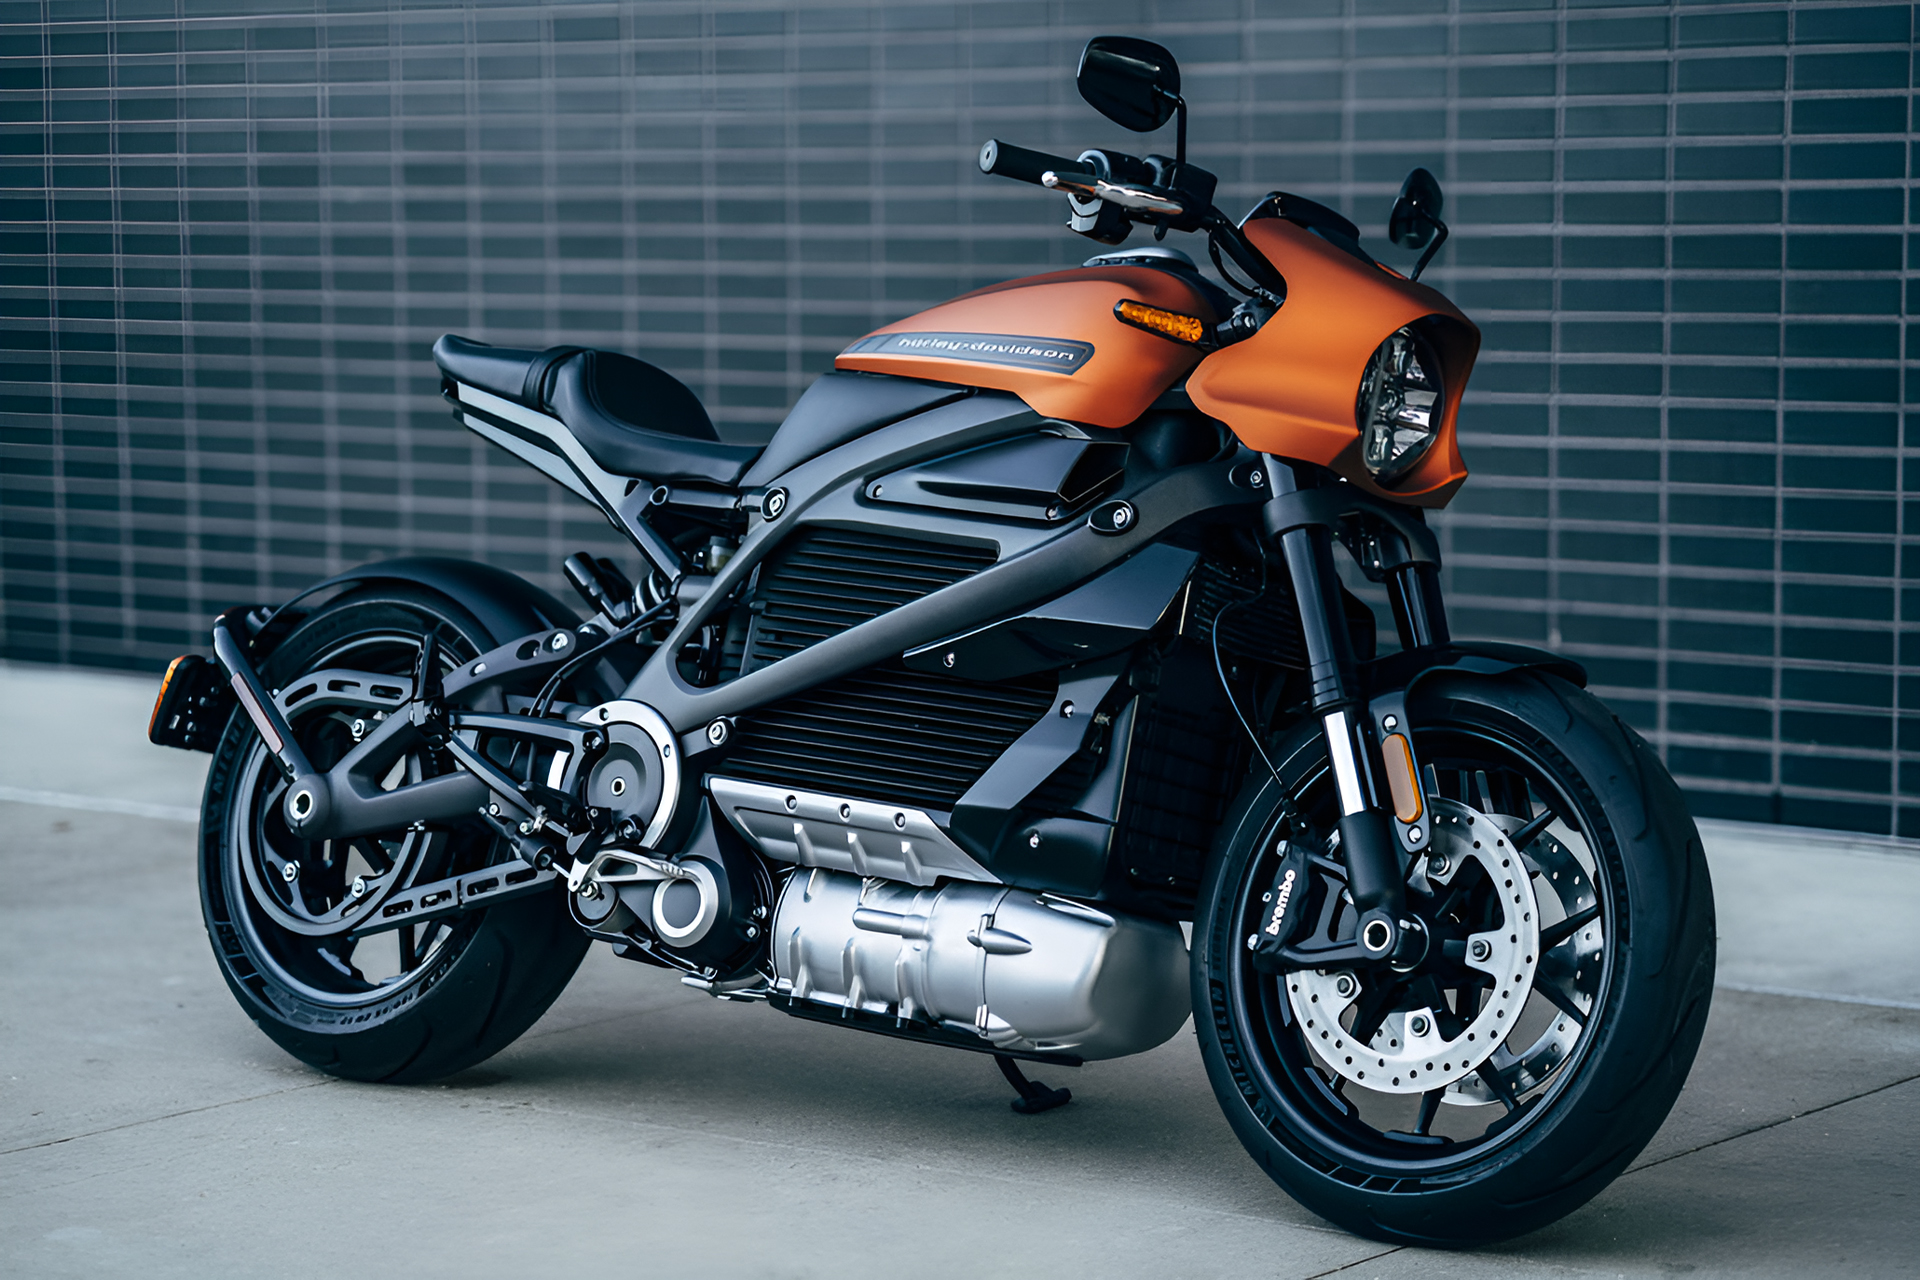 Motos eletricas da Harley Davidson CEO revela que a empresa esta atualmente em transicao para se tornar totalmente eletrica no futuro